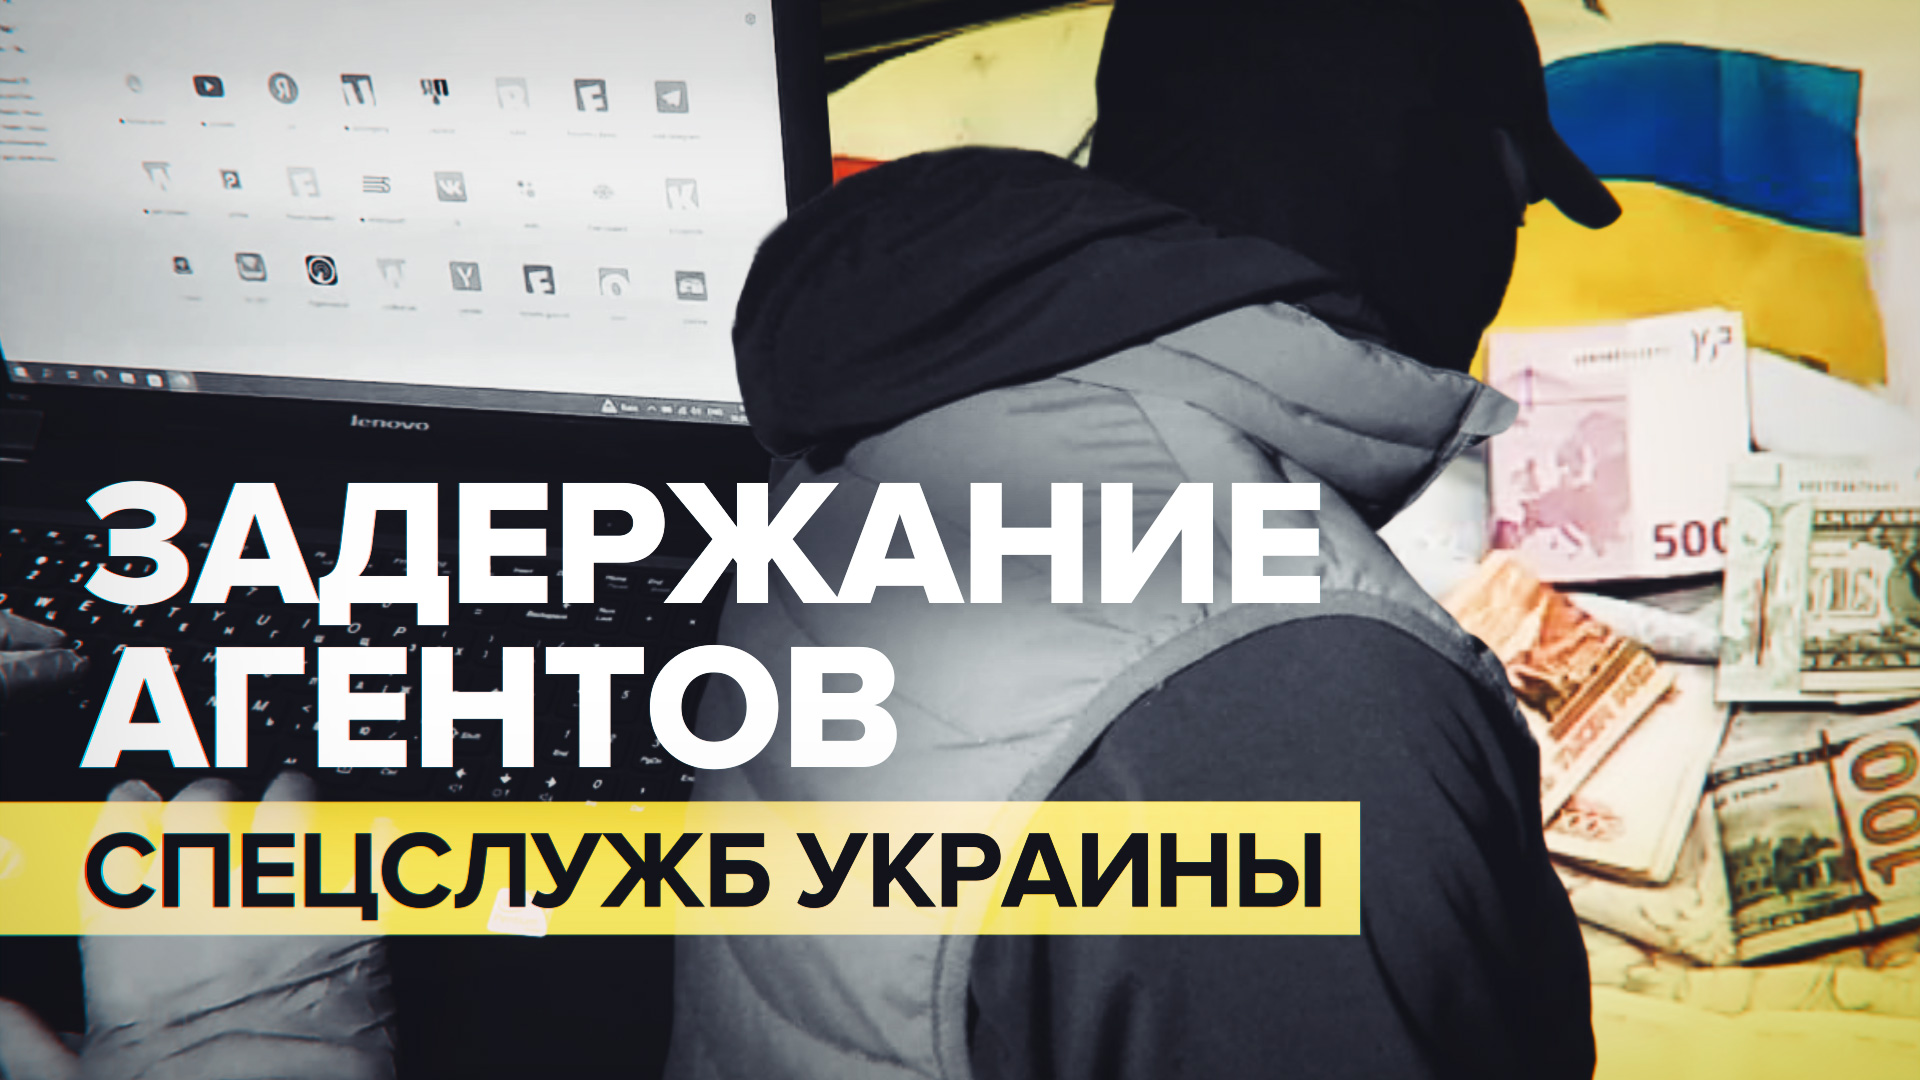 ФСБ задержала двух агентов спецслужб Украины